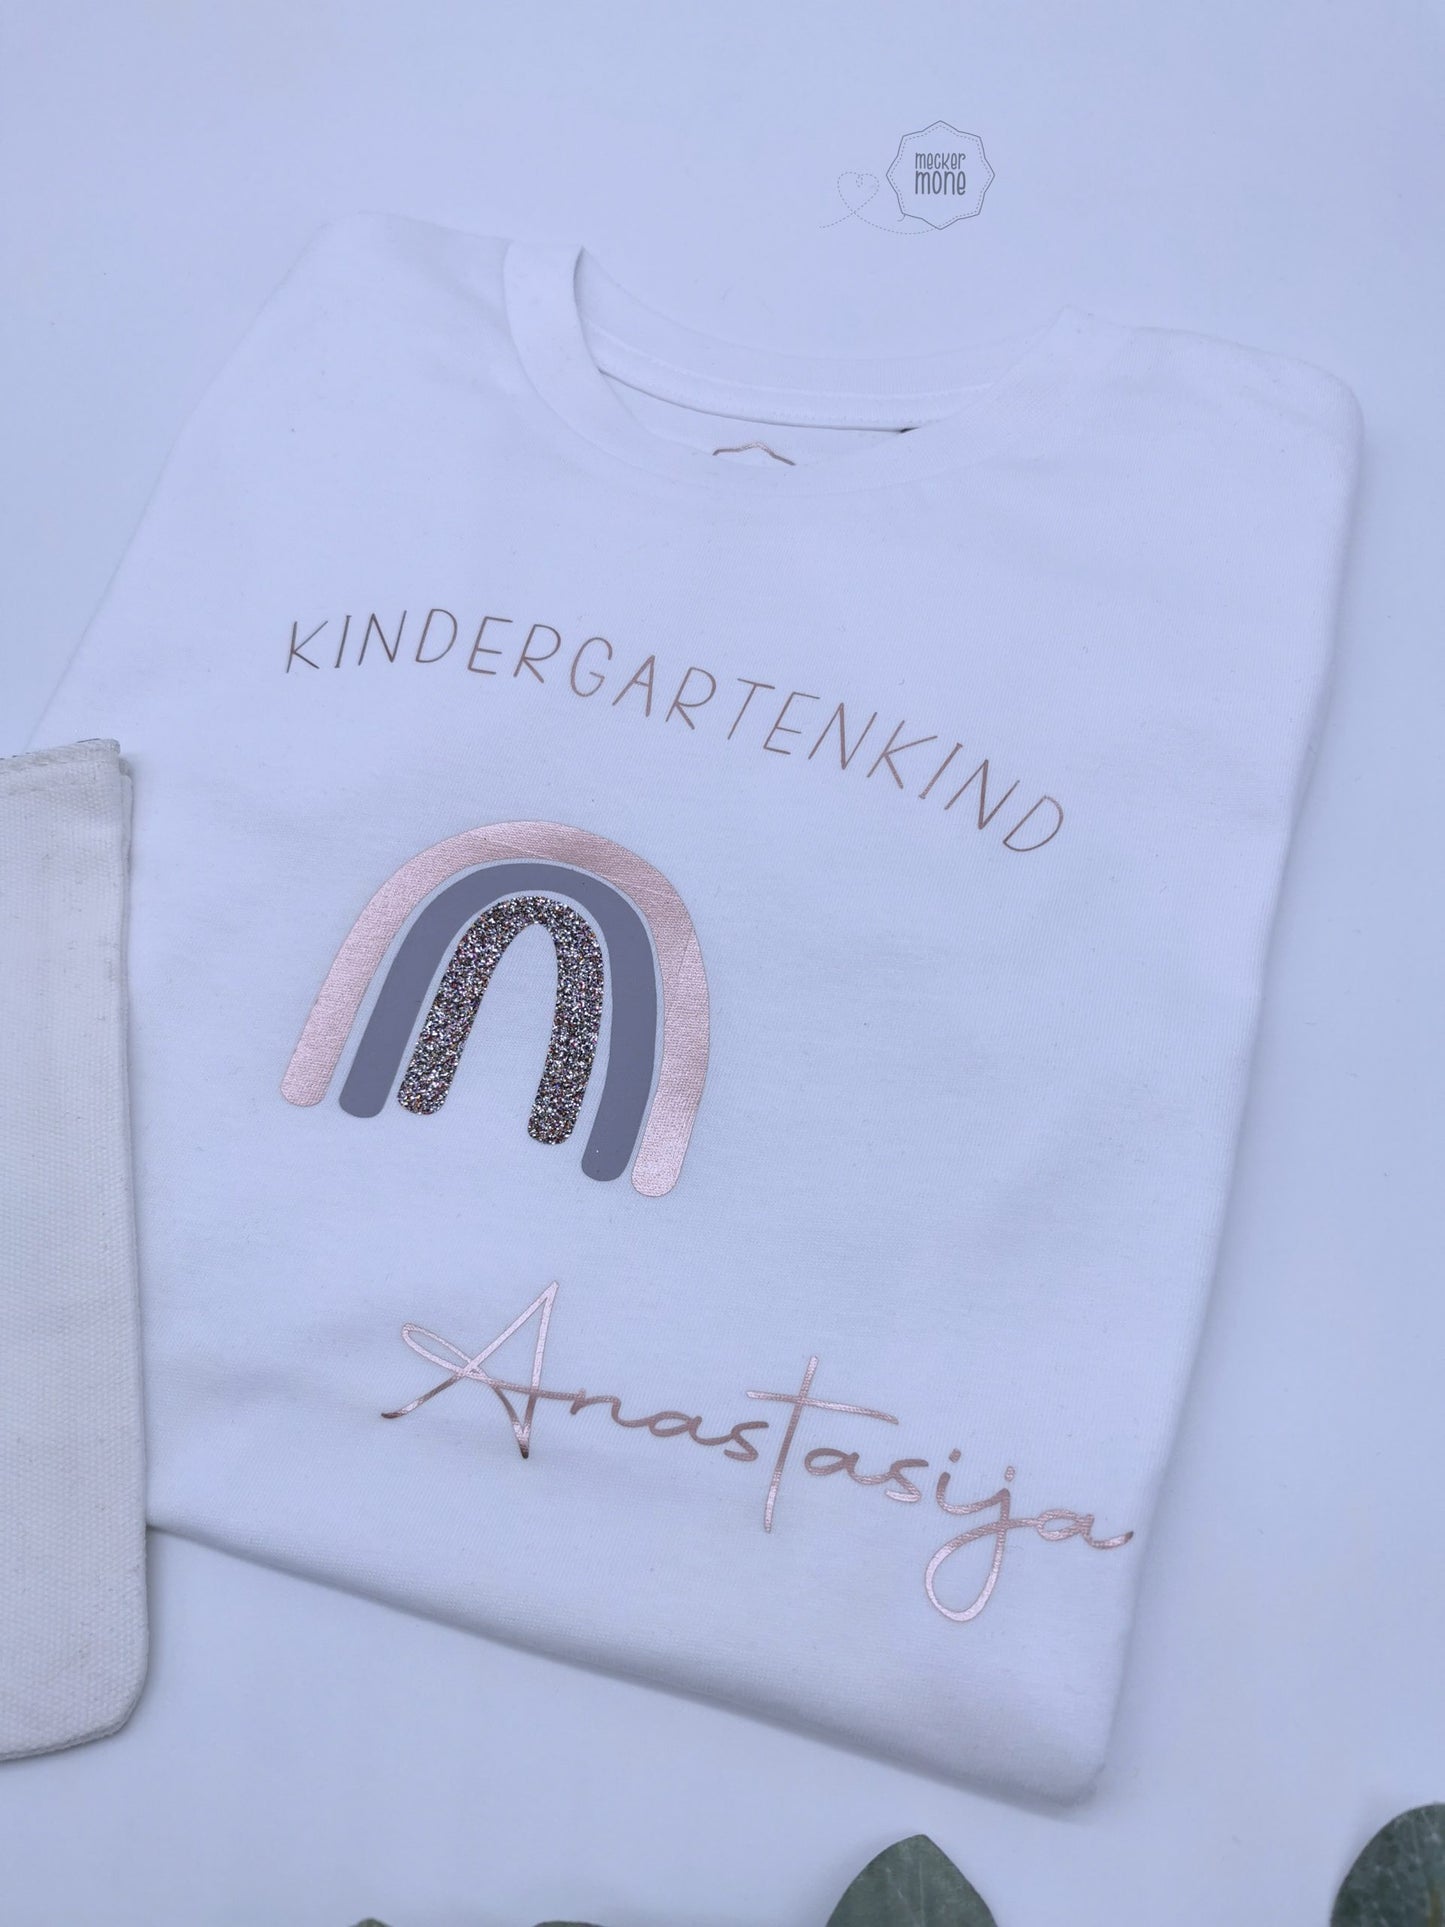 School/kindergarten kid shirt